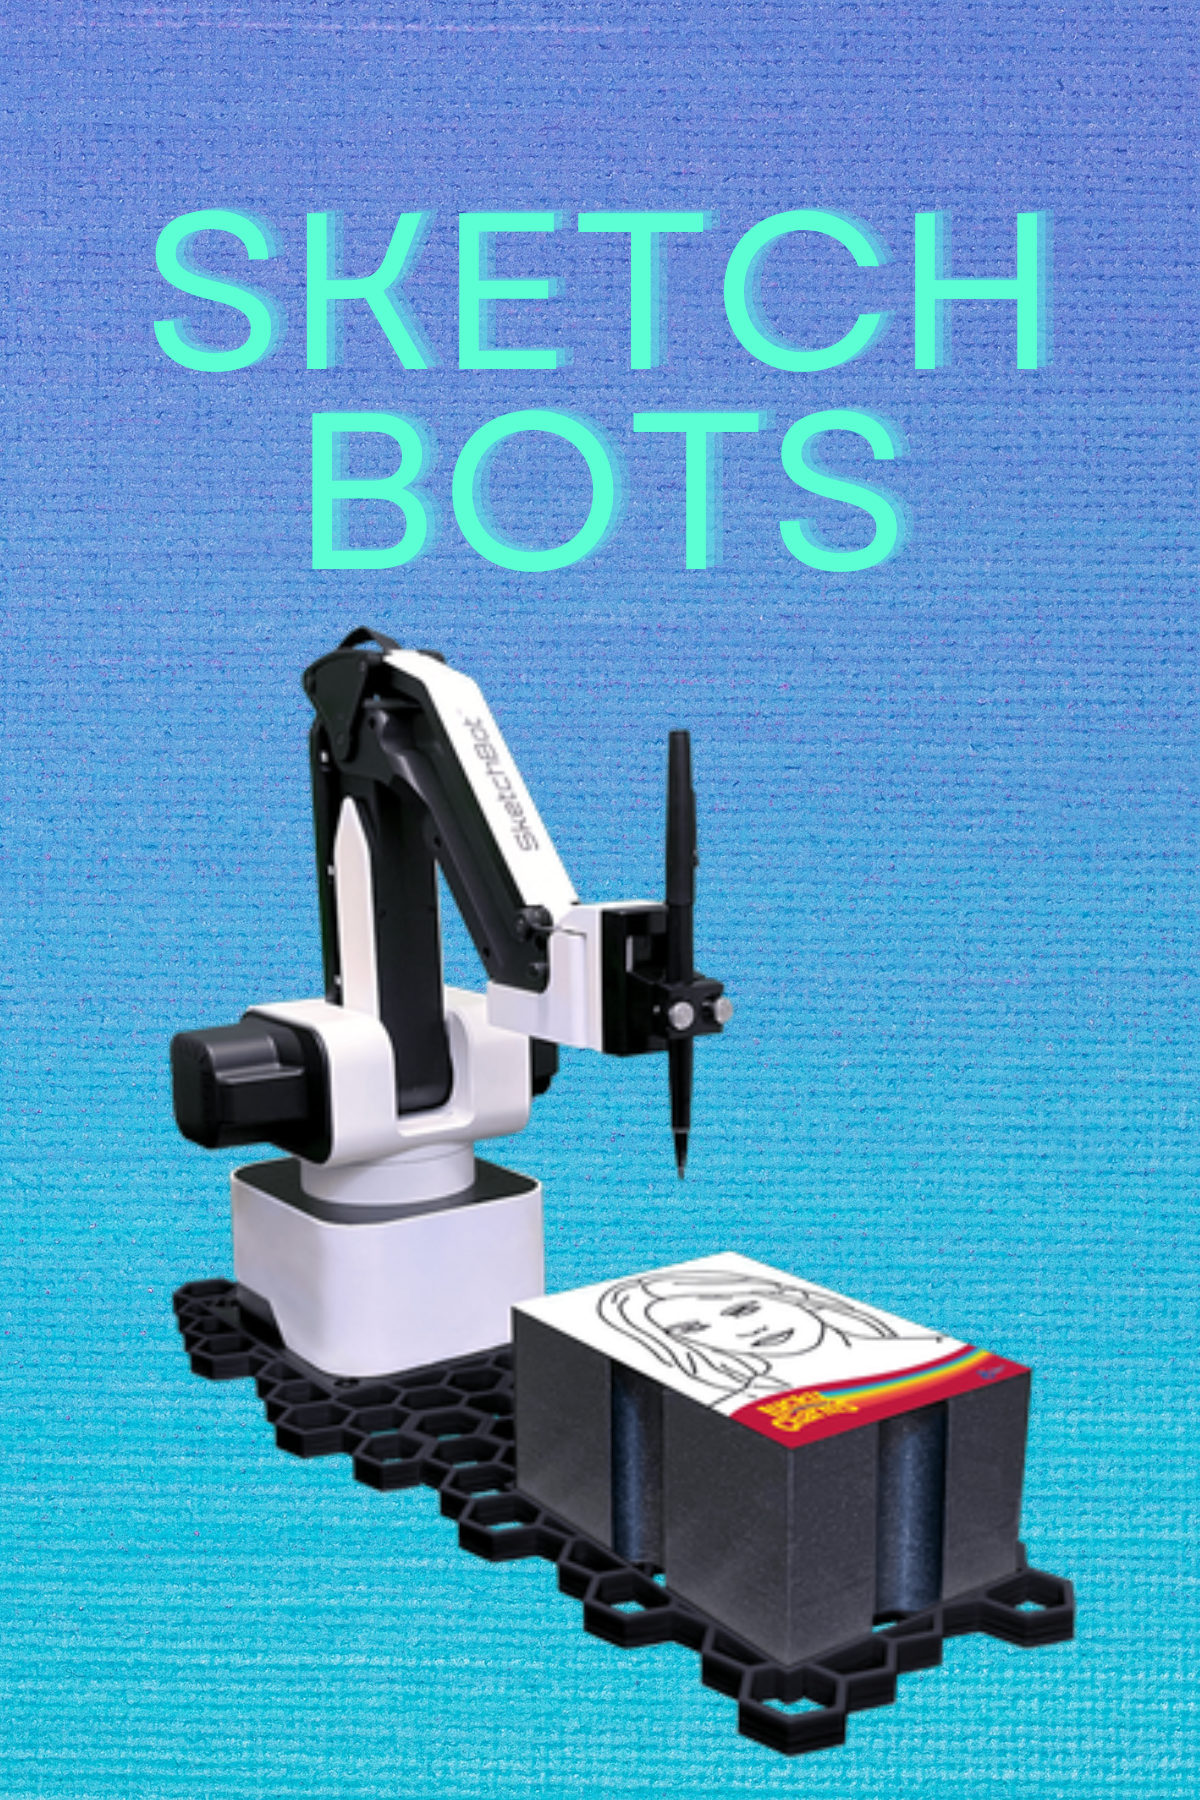 Sketchbot Robot Sketch Bucks County, PA